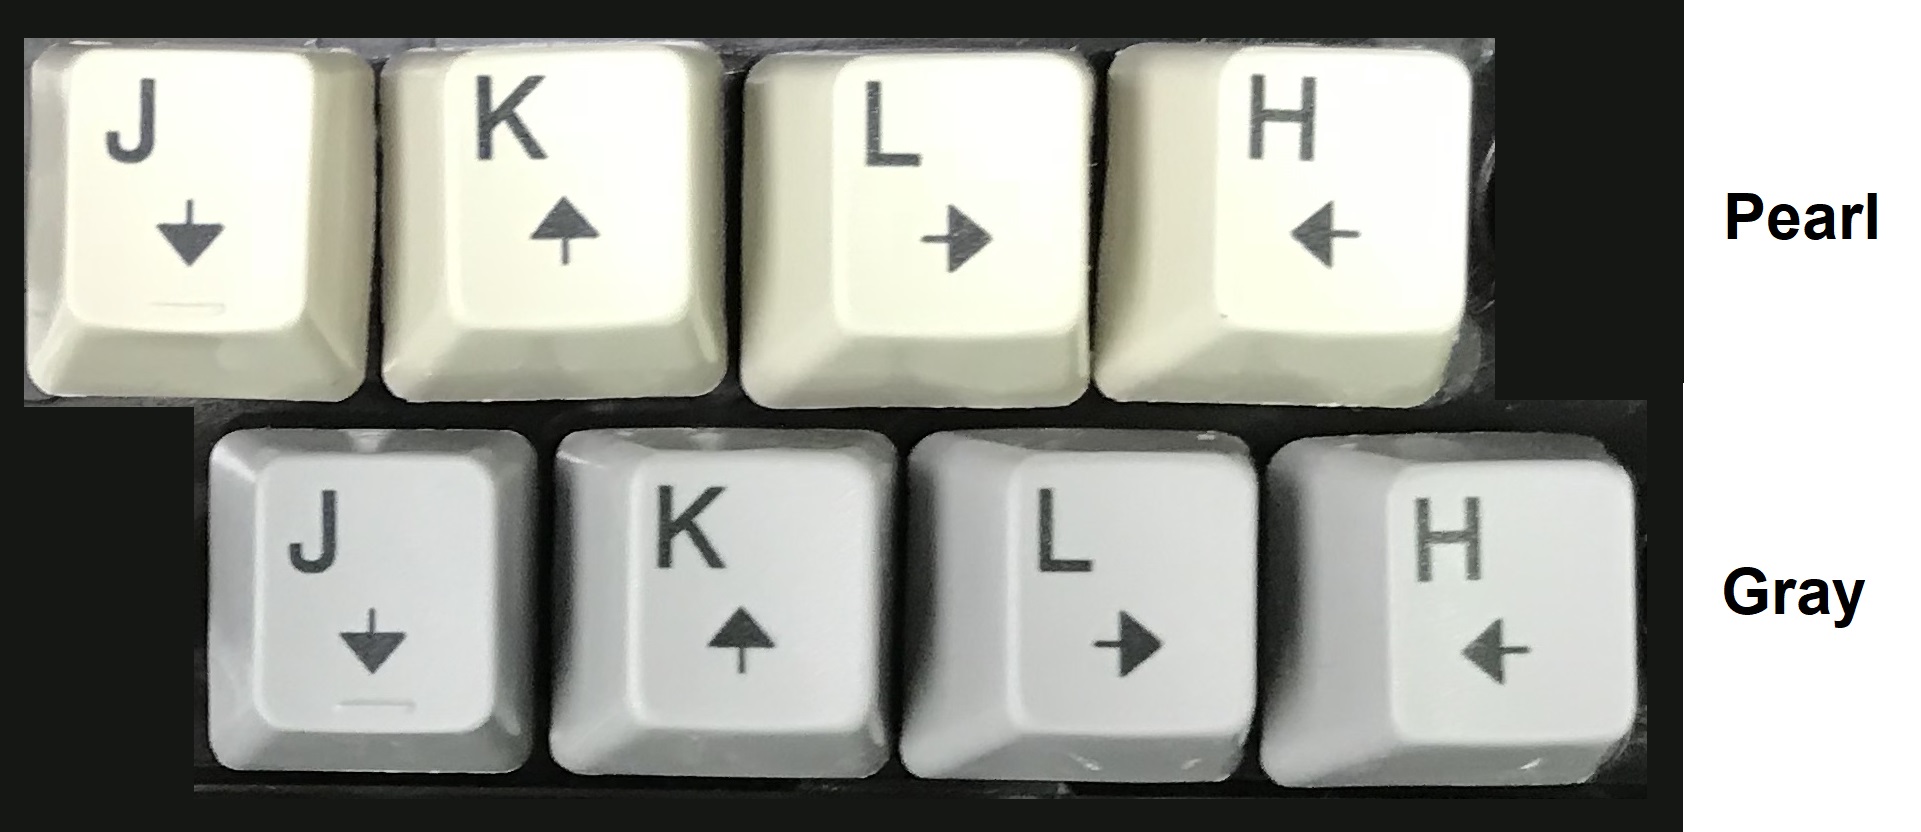 Vim Cursor Keys for Buckling Spring Keyboards